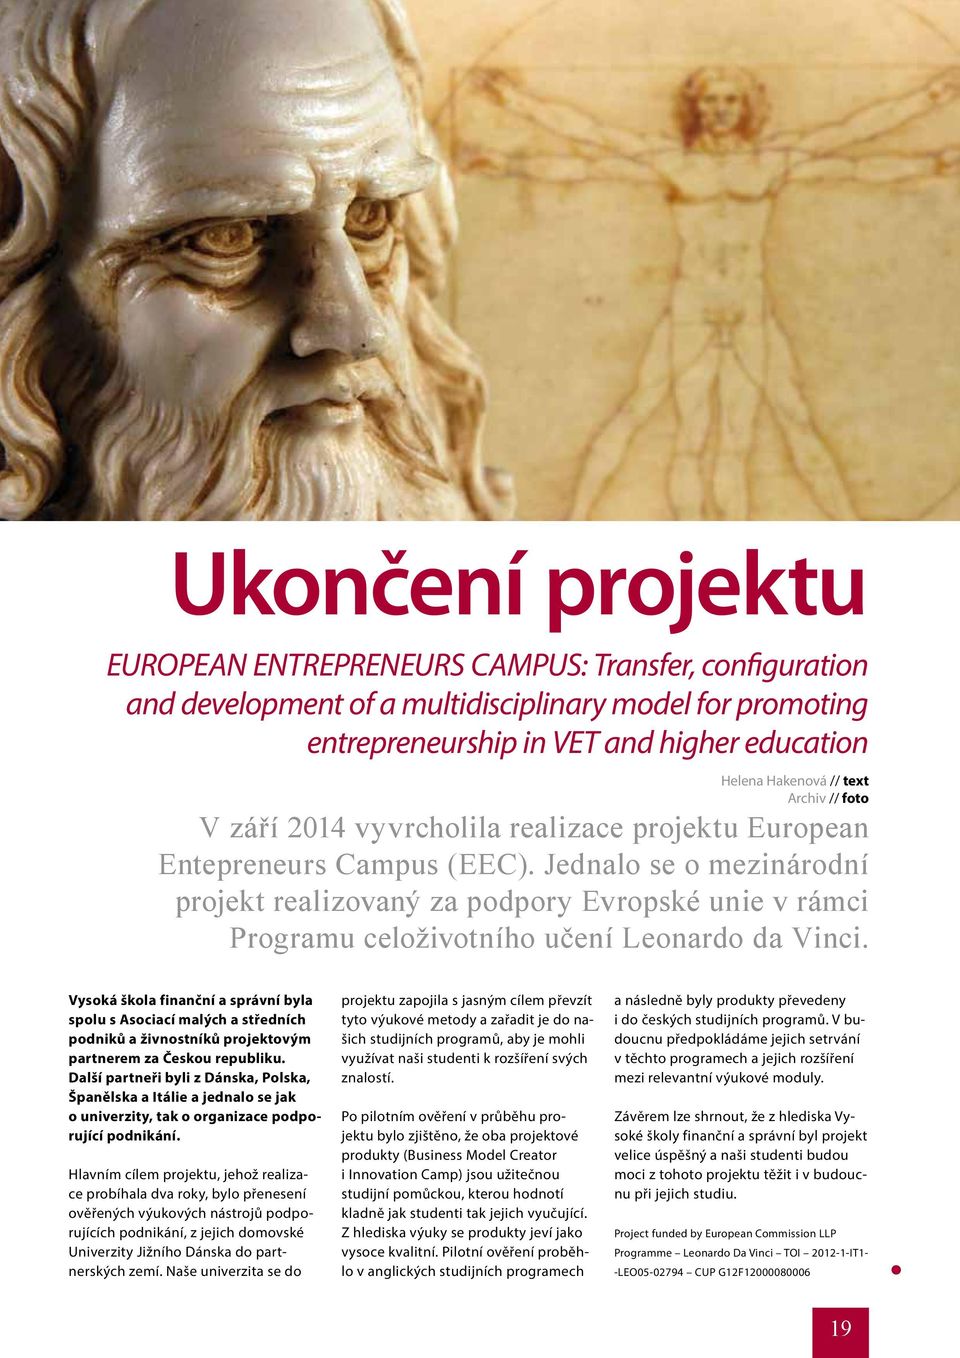 Jednalo se o mezinárodní projekt realizovaný za podpory Evropské unie v rámci Programu celoživotního učení Leonardo da Vinci.